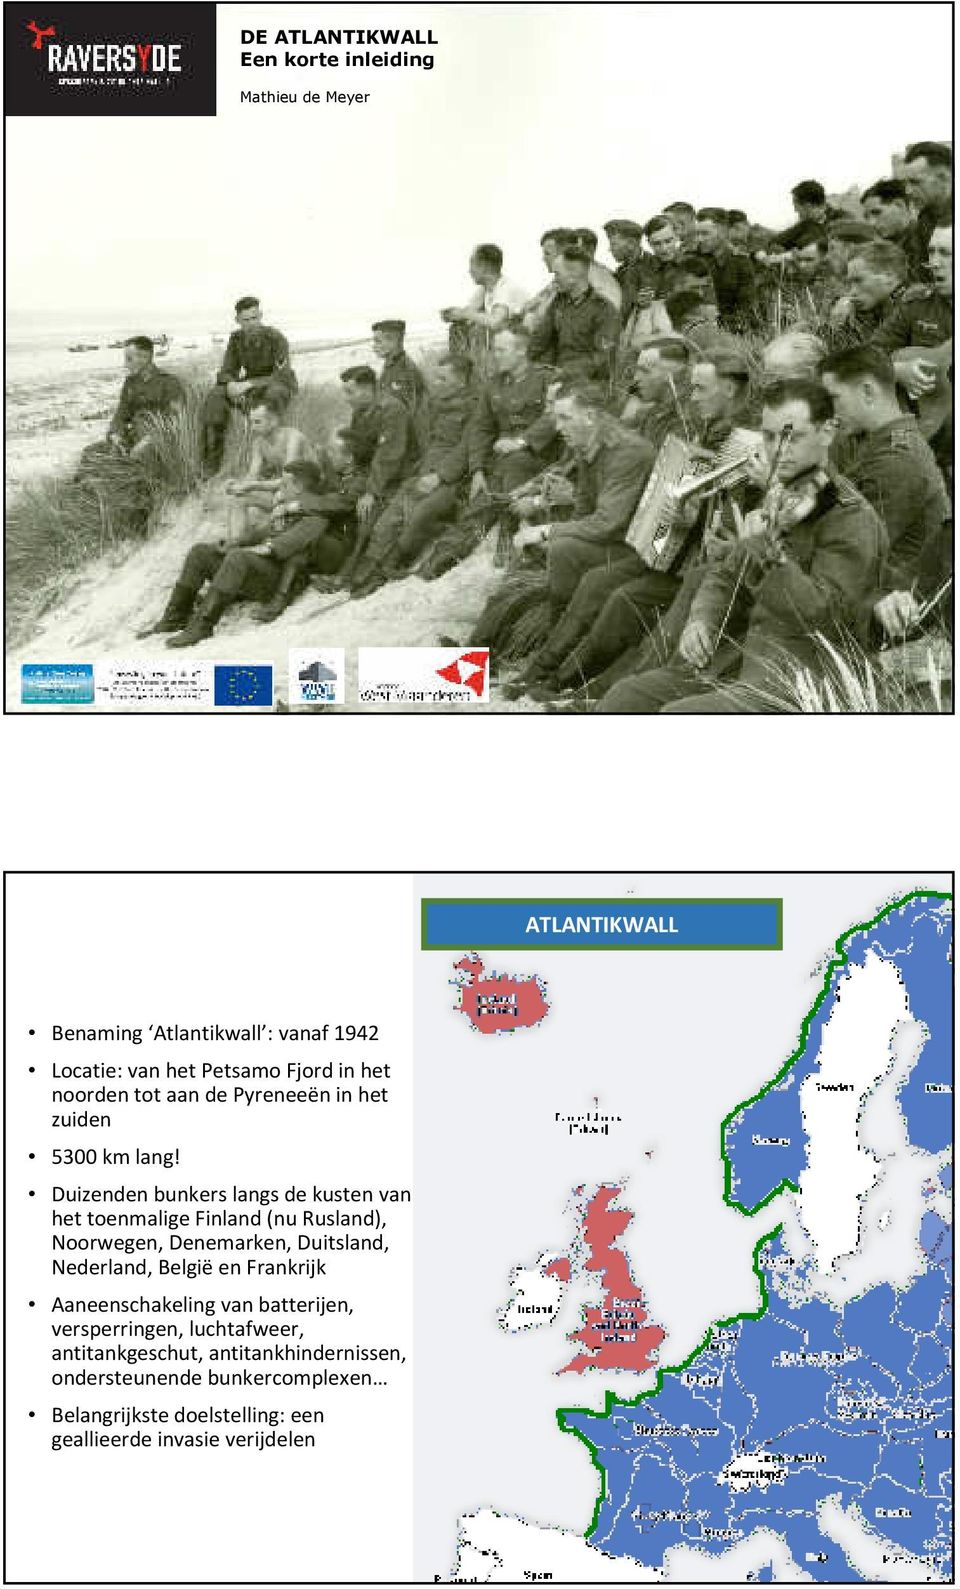 Duizenden bunkers langs de kusten van het toenmalige Finland (nu Rusland), Noorwegen, Denemarken, Duitsland, Nederland, België en